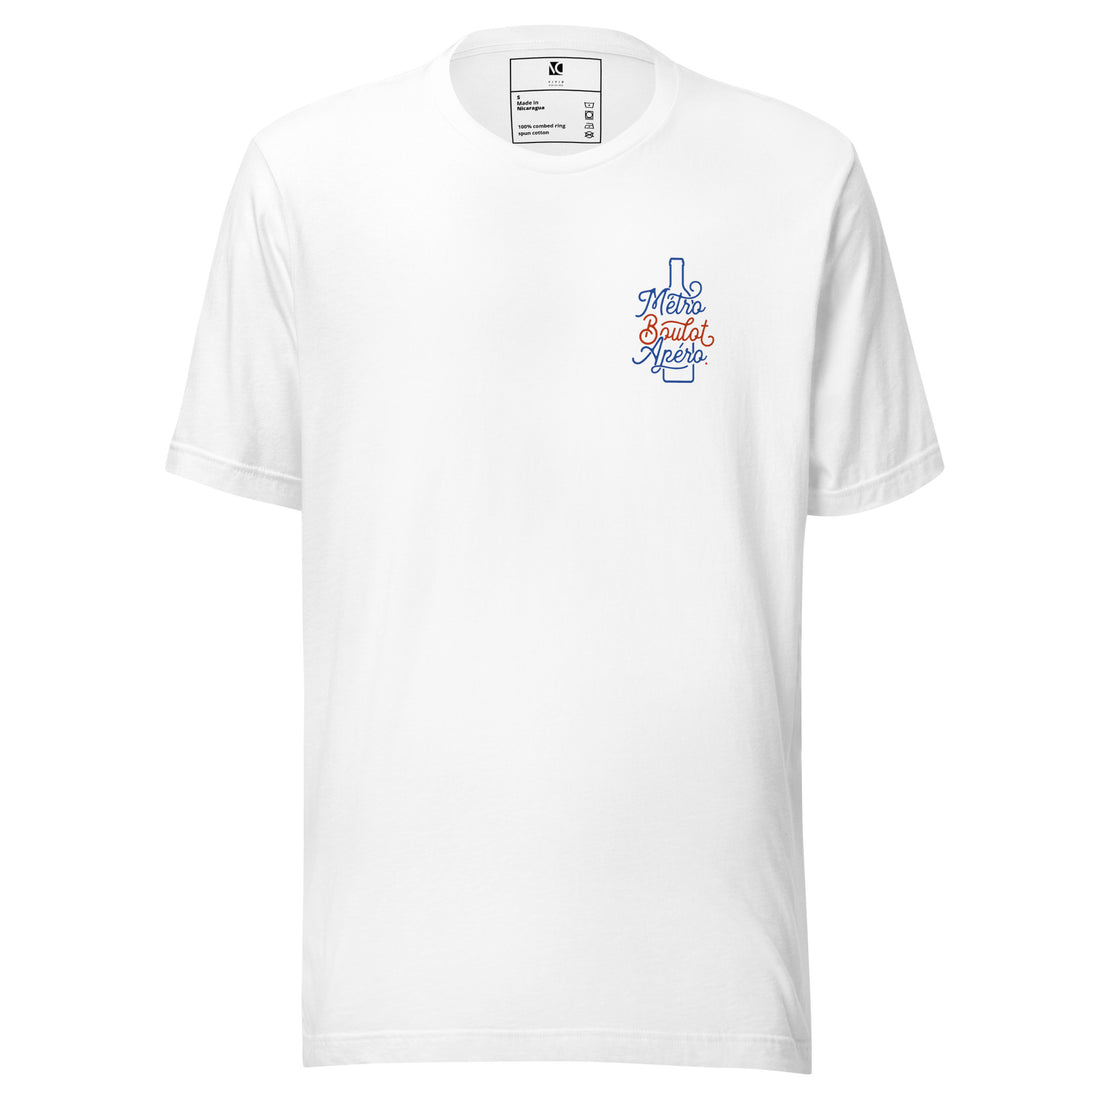 Métro, Boulot, Apéro (S) - Unisex T-Shirt